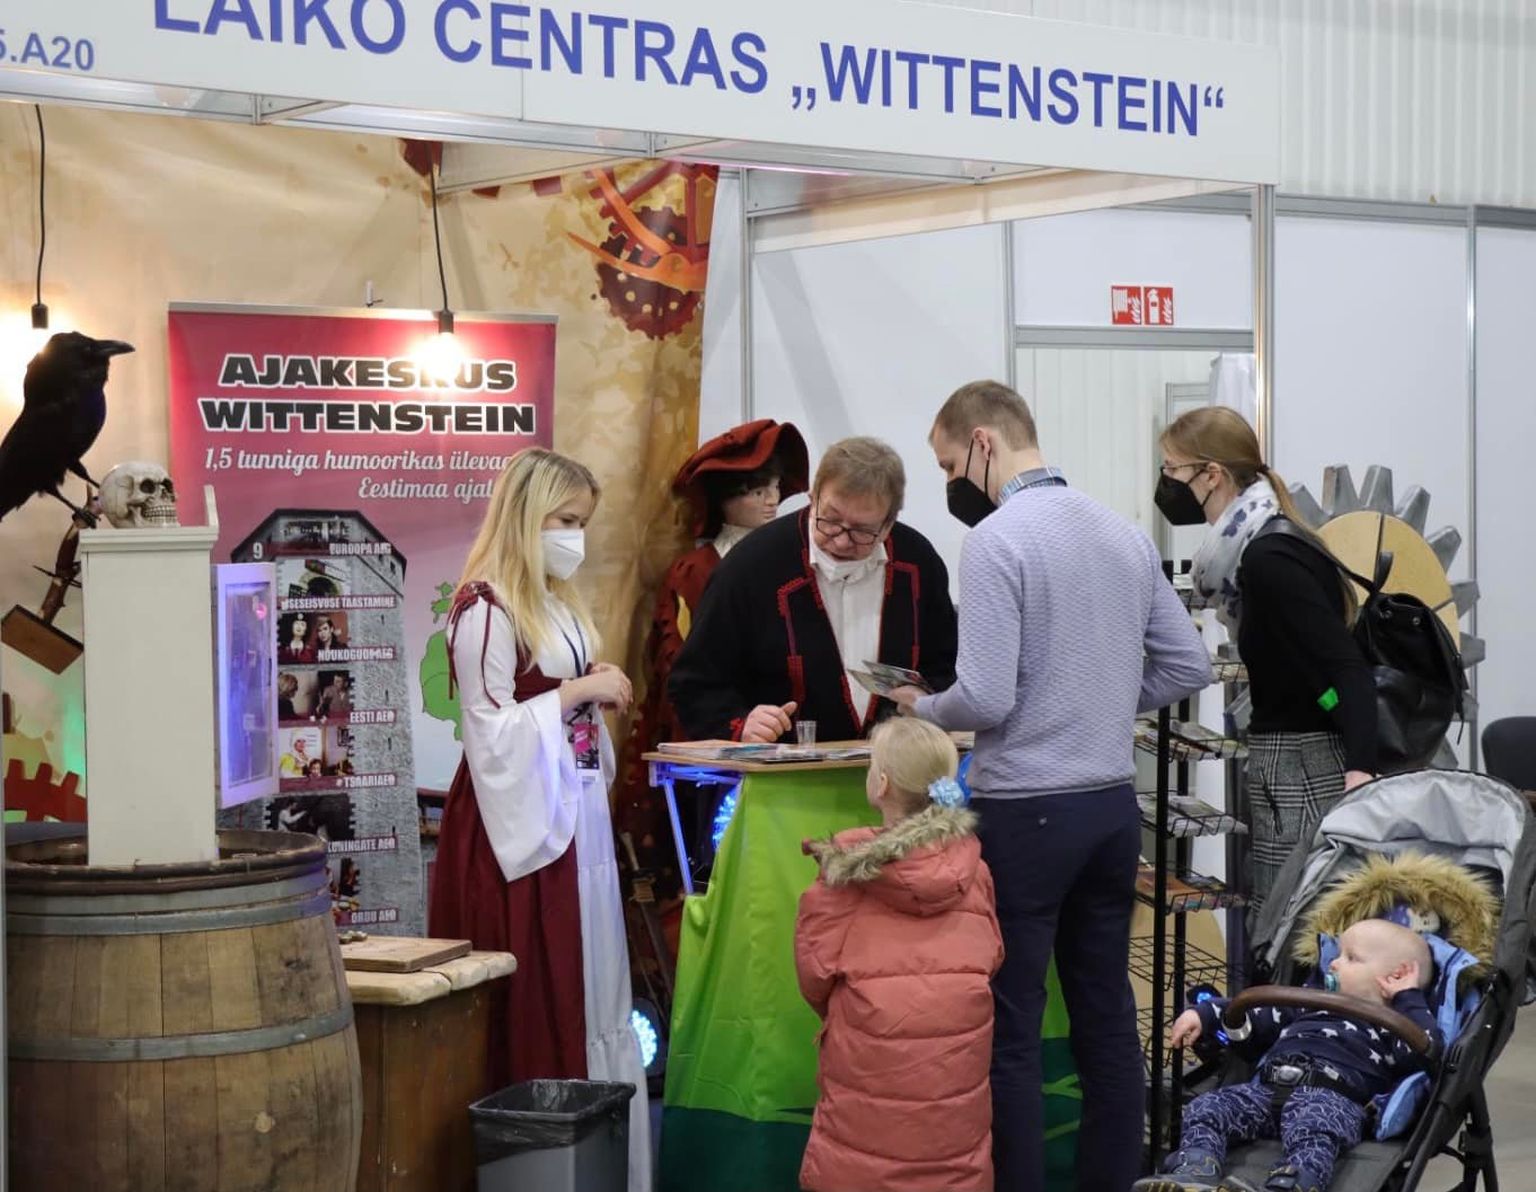 Ajakeskuse Wittenstein esindus osales Leedus turismimessil, et oma tegemiste vastu laiemat huvi äratada.